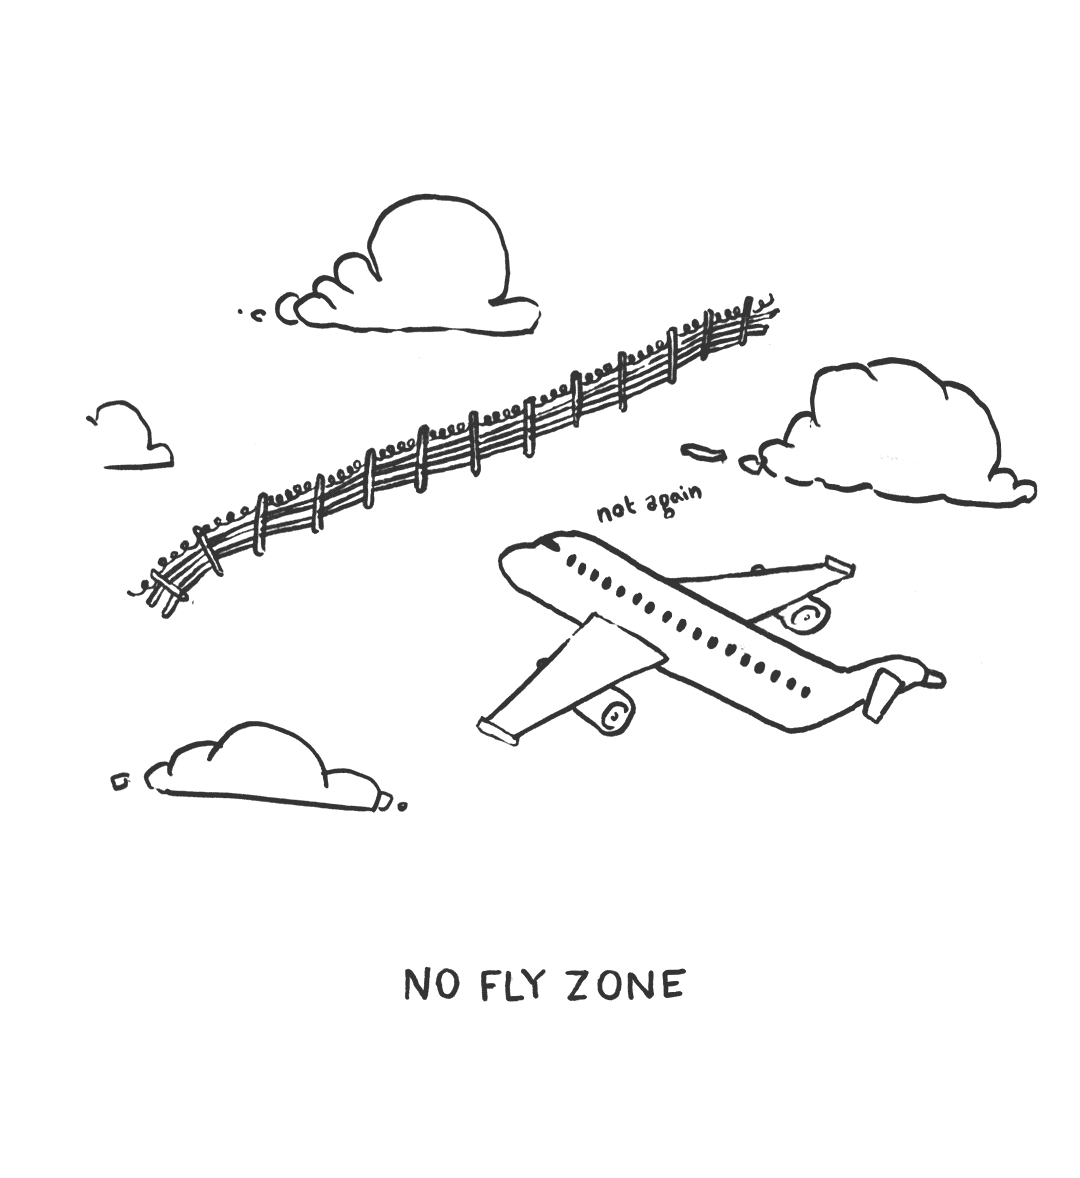 Zone Zone